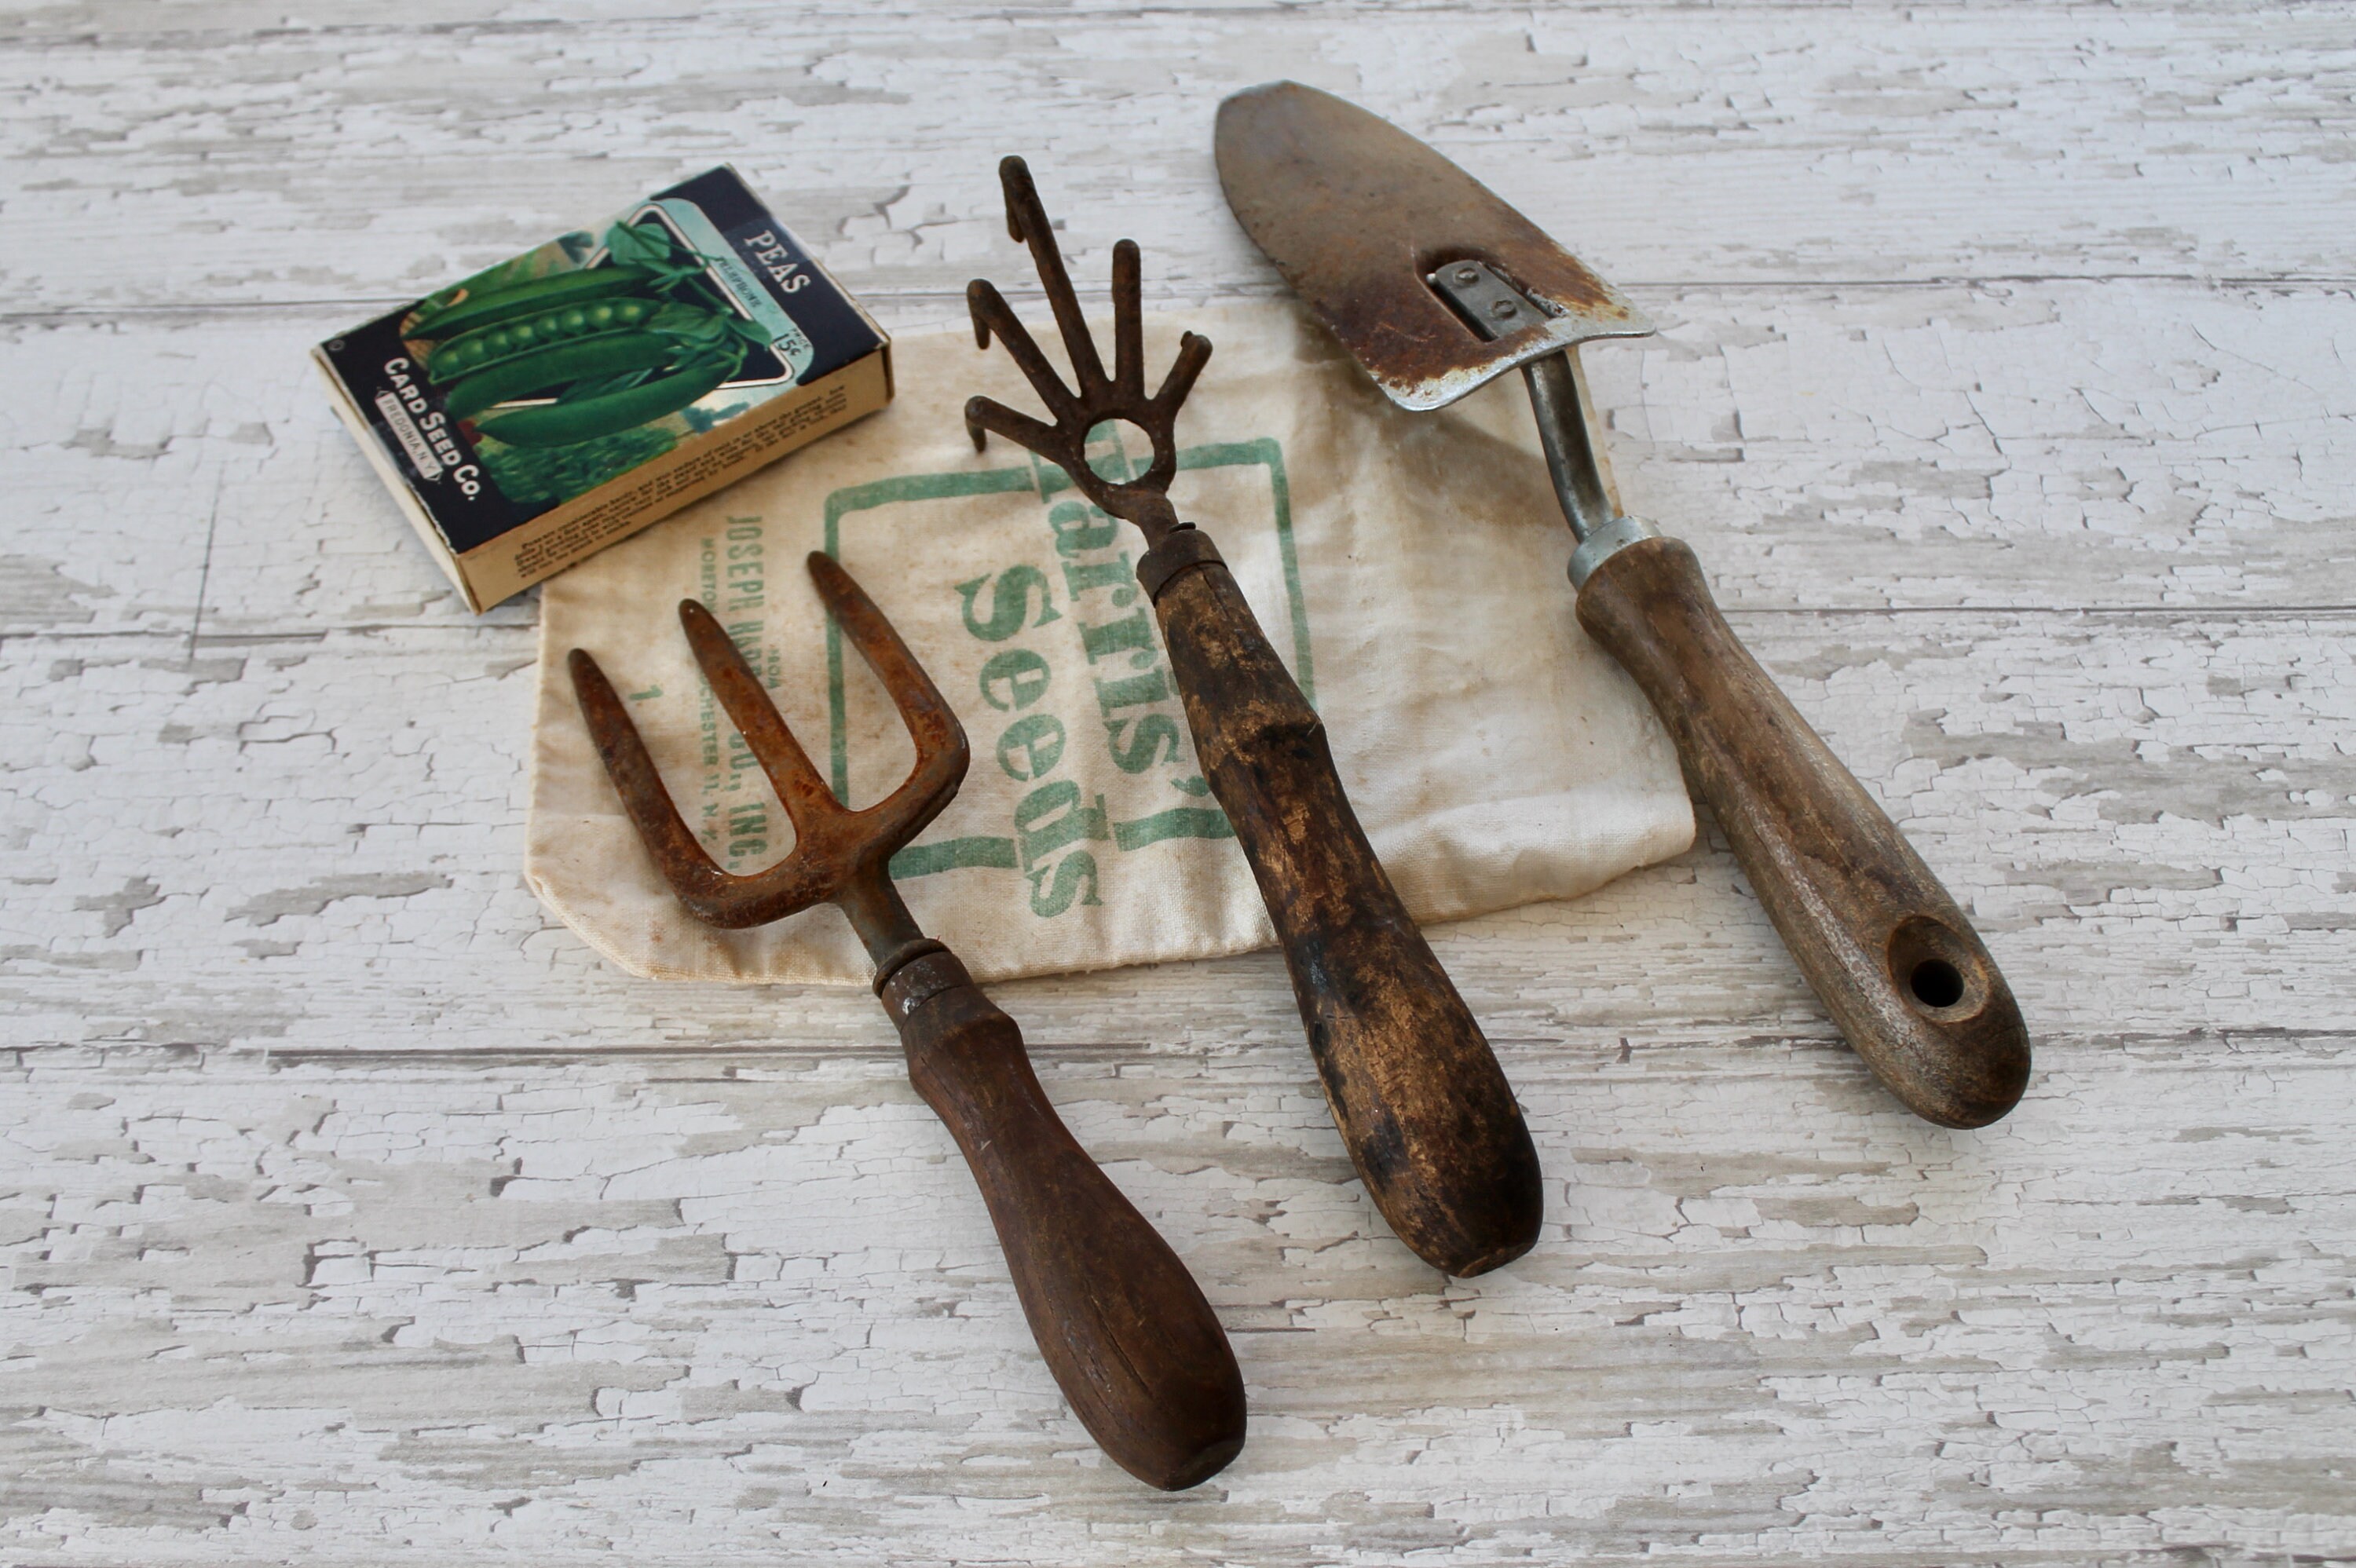 Vintage 2 Hand Held Gardening Tools Vintage Garden Decor Shovel/Trowel and Cultivator